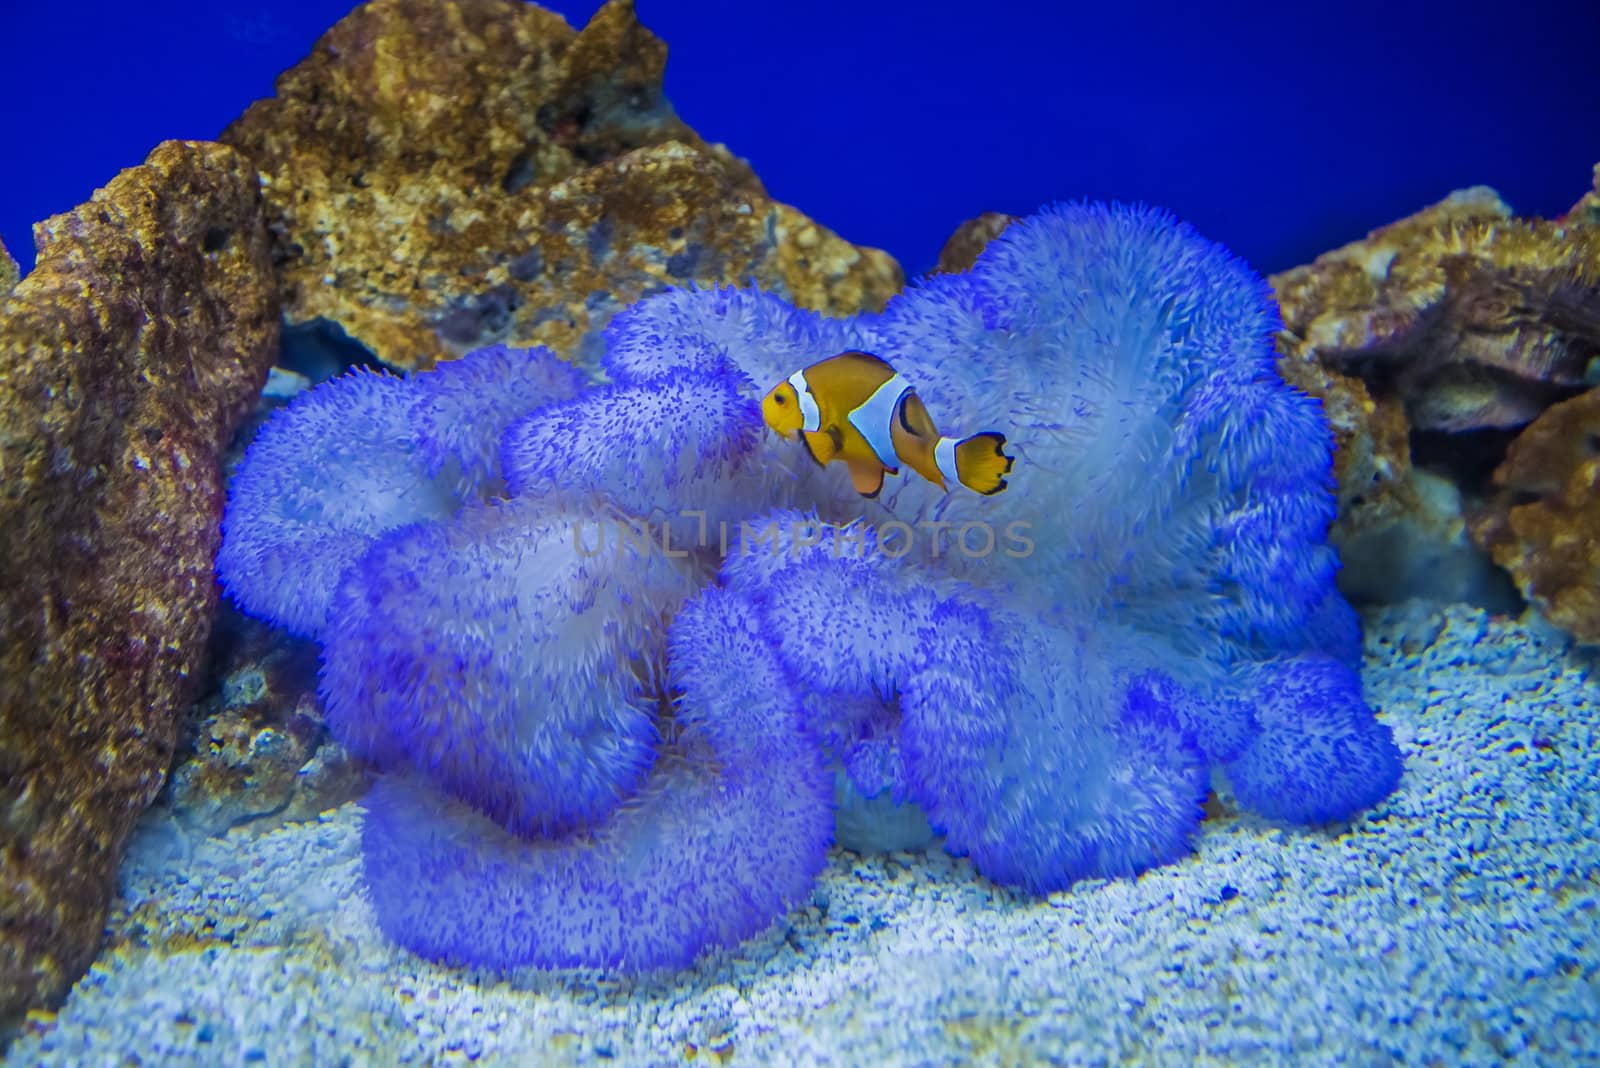 in an aquarium by steirus